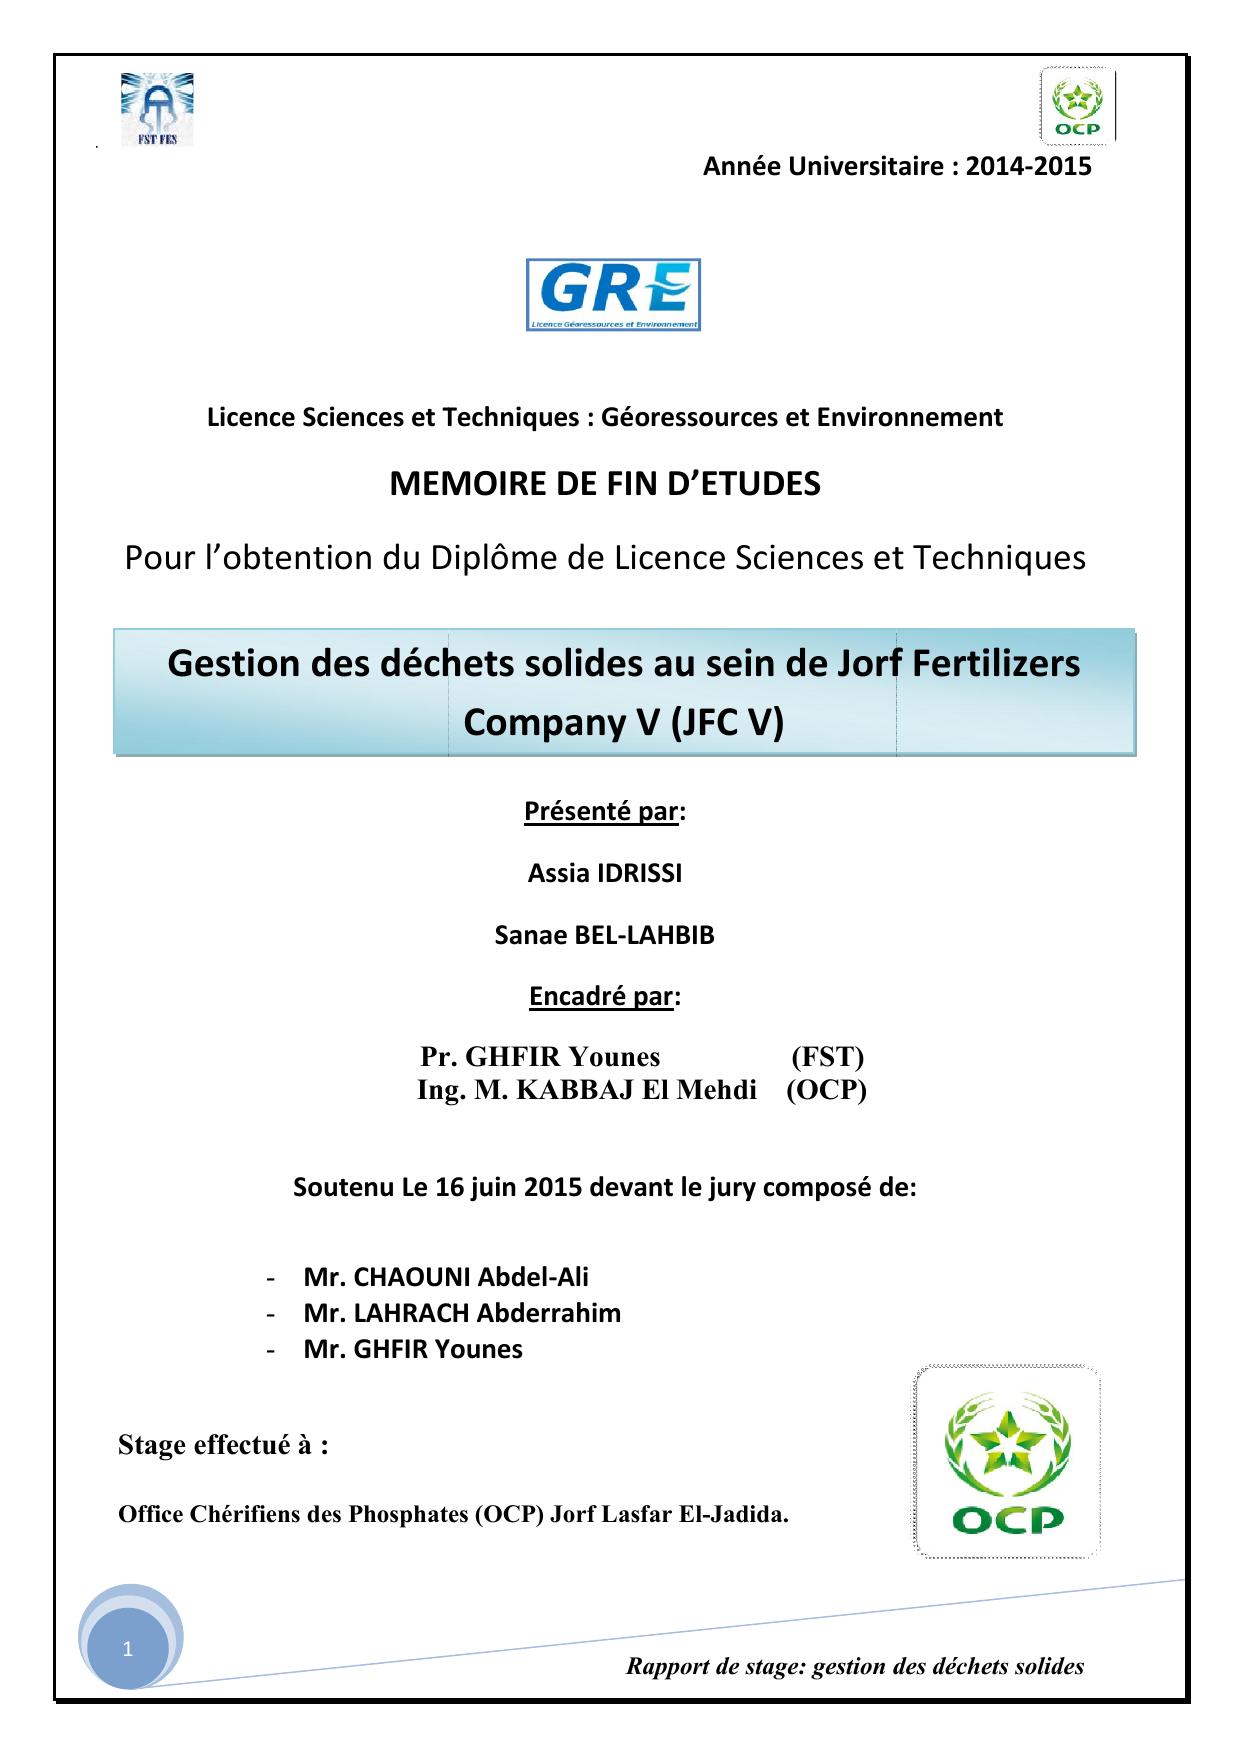 Gestion des déchets solides au sein de Jorf Fertilizers Company V (JFC V)